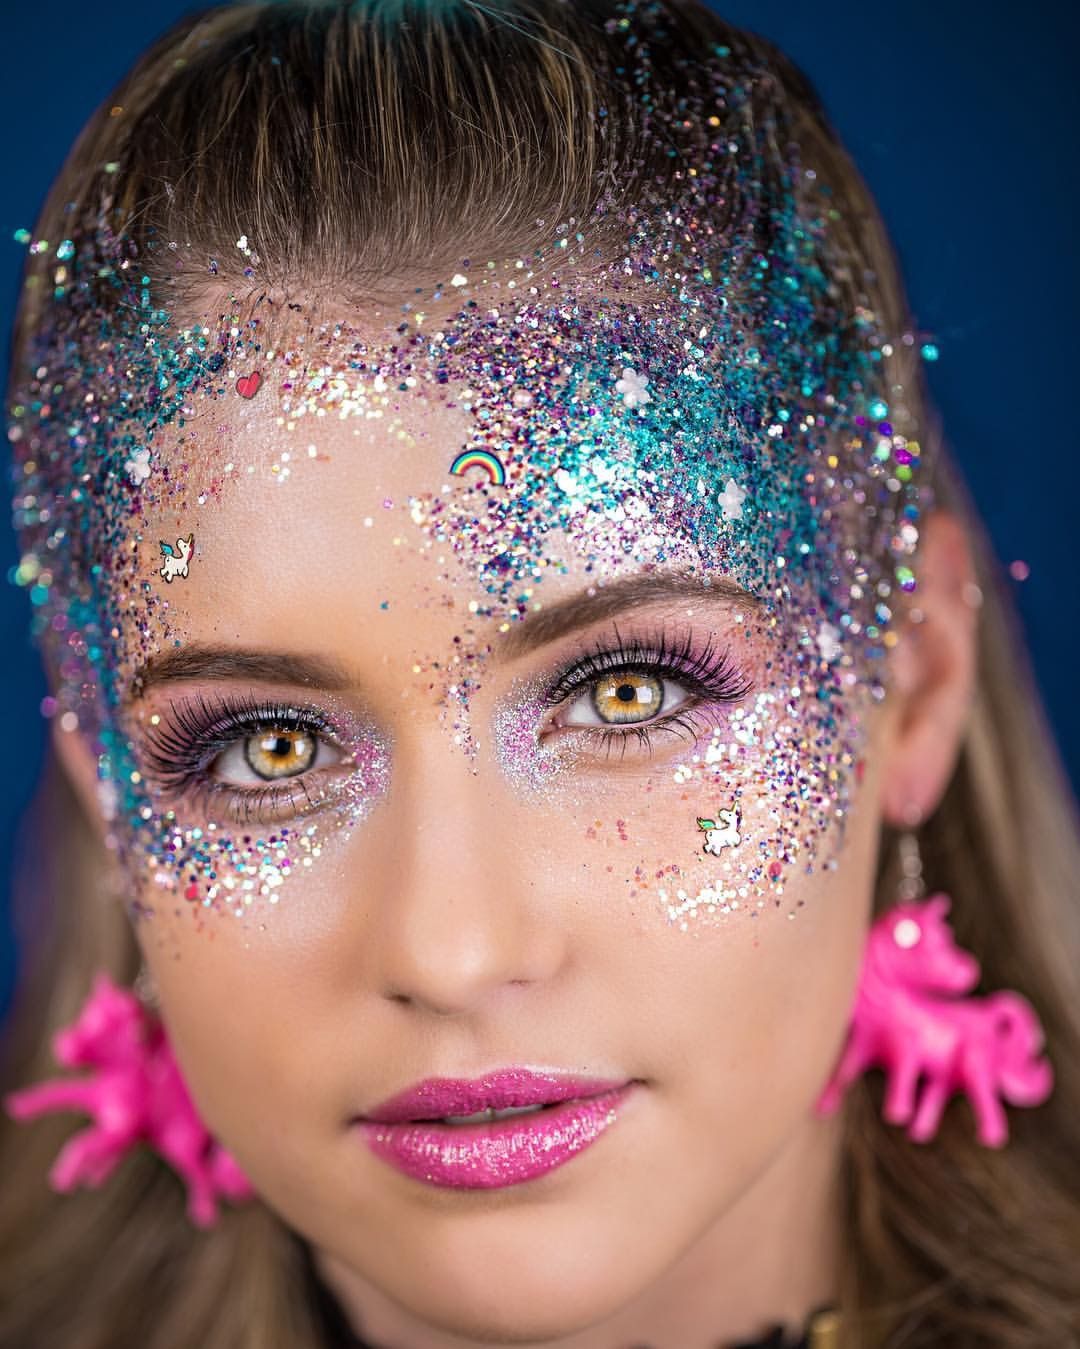 sexy glitter makeup ideas